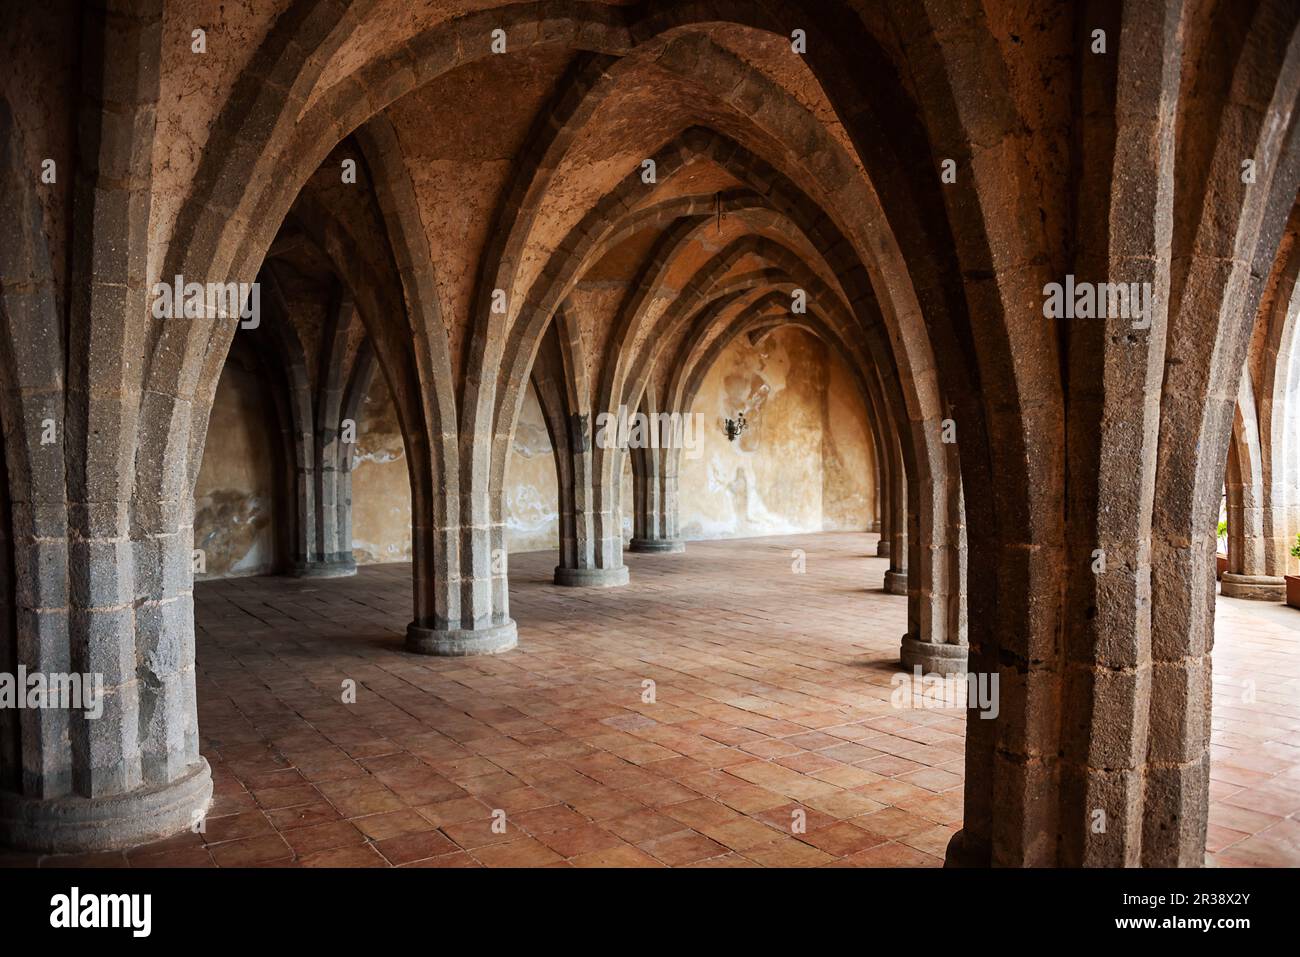 Cripta con columnas y arcos de una antigua villa en Italia Foto de stock